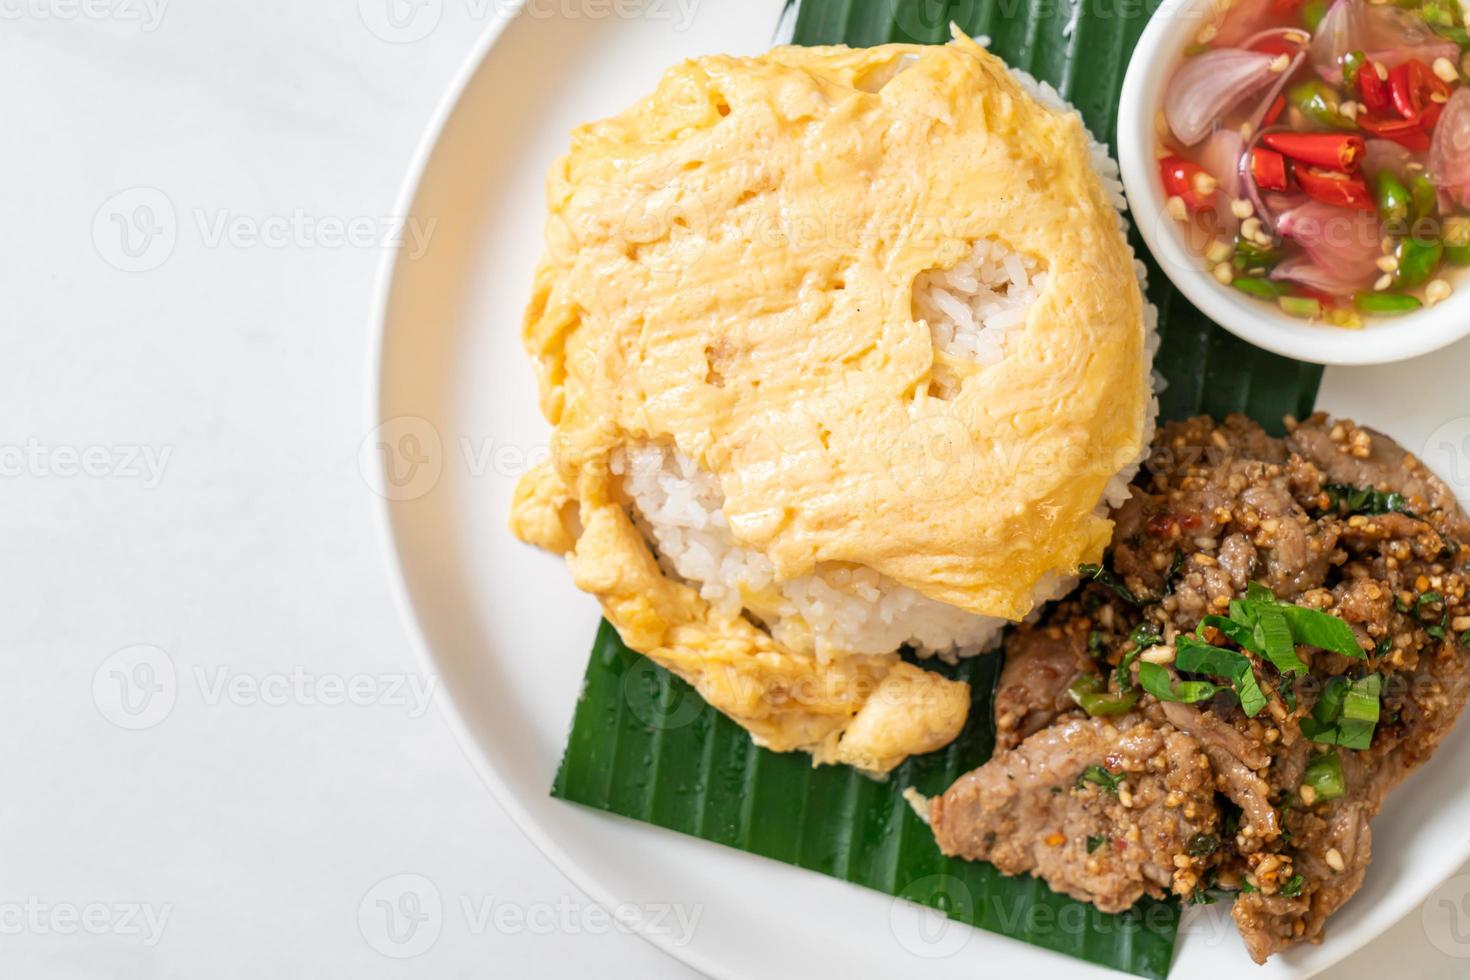 ägg på toppat ris med grillat fläsk och kryddig sås - asiatisk matstil foto